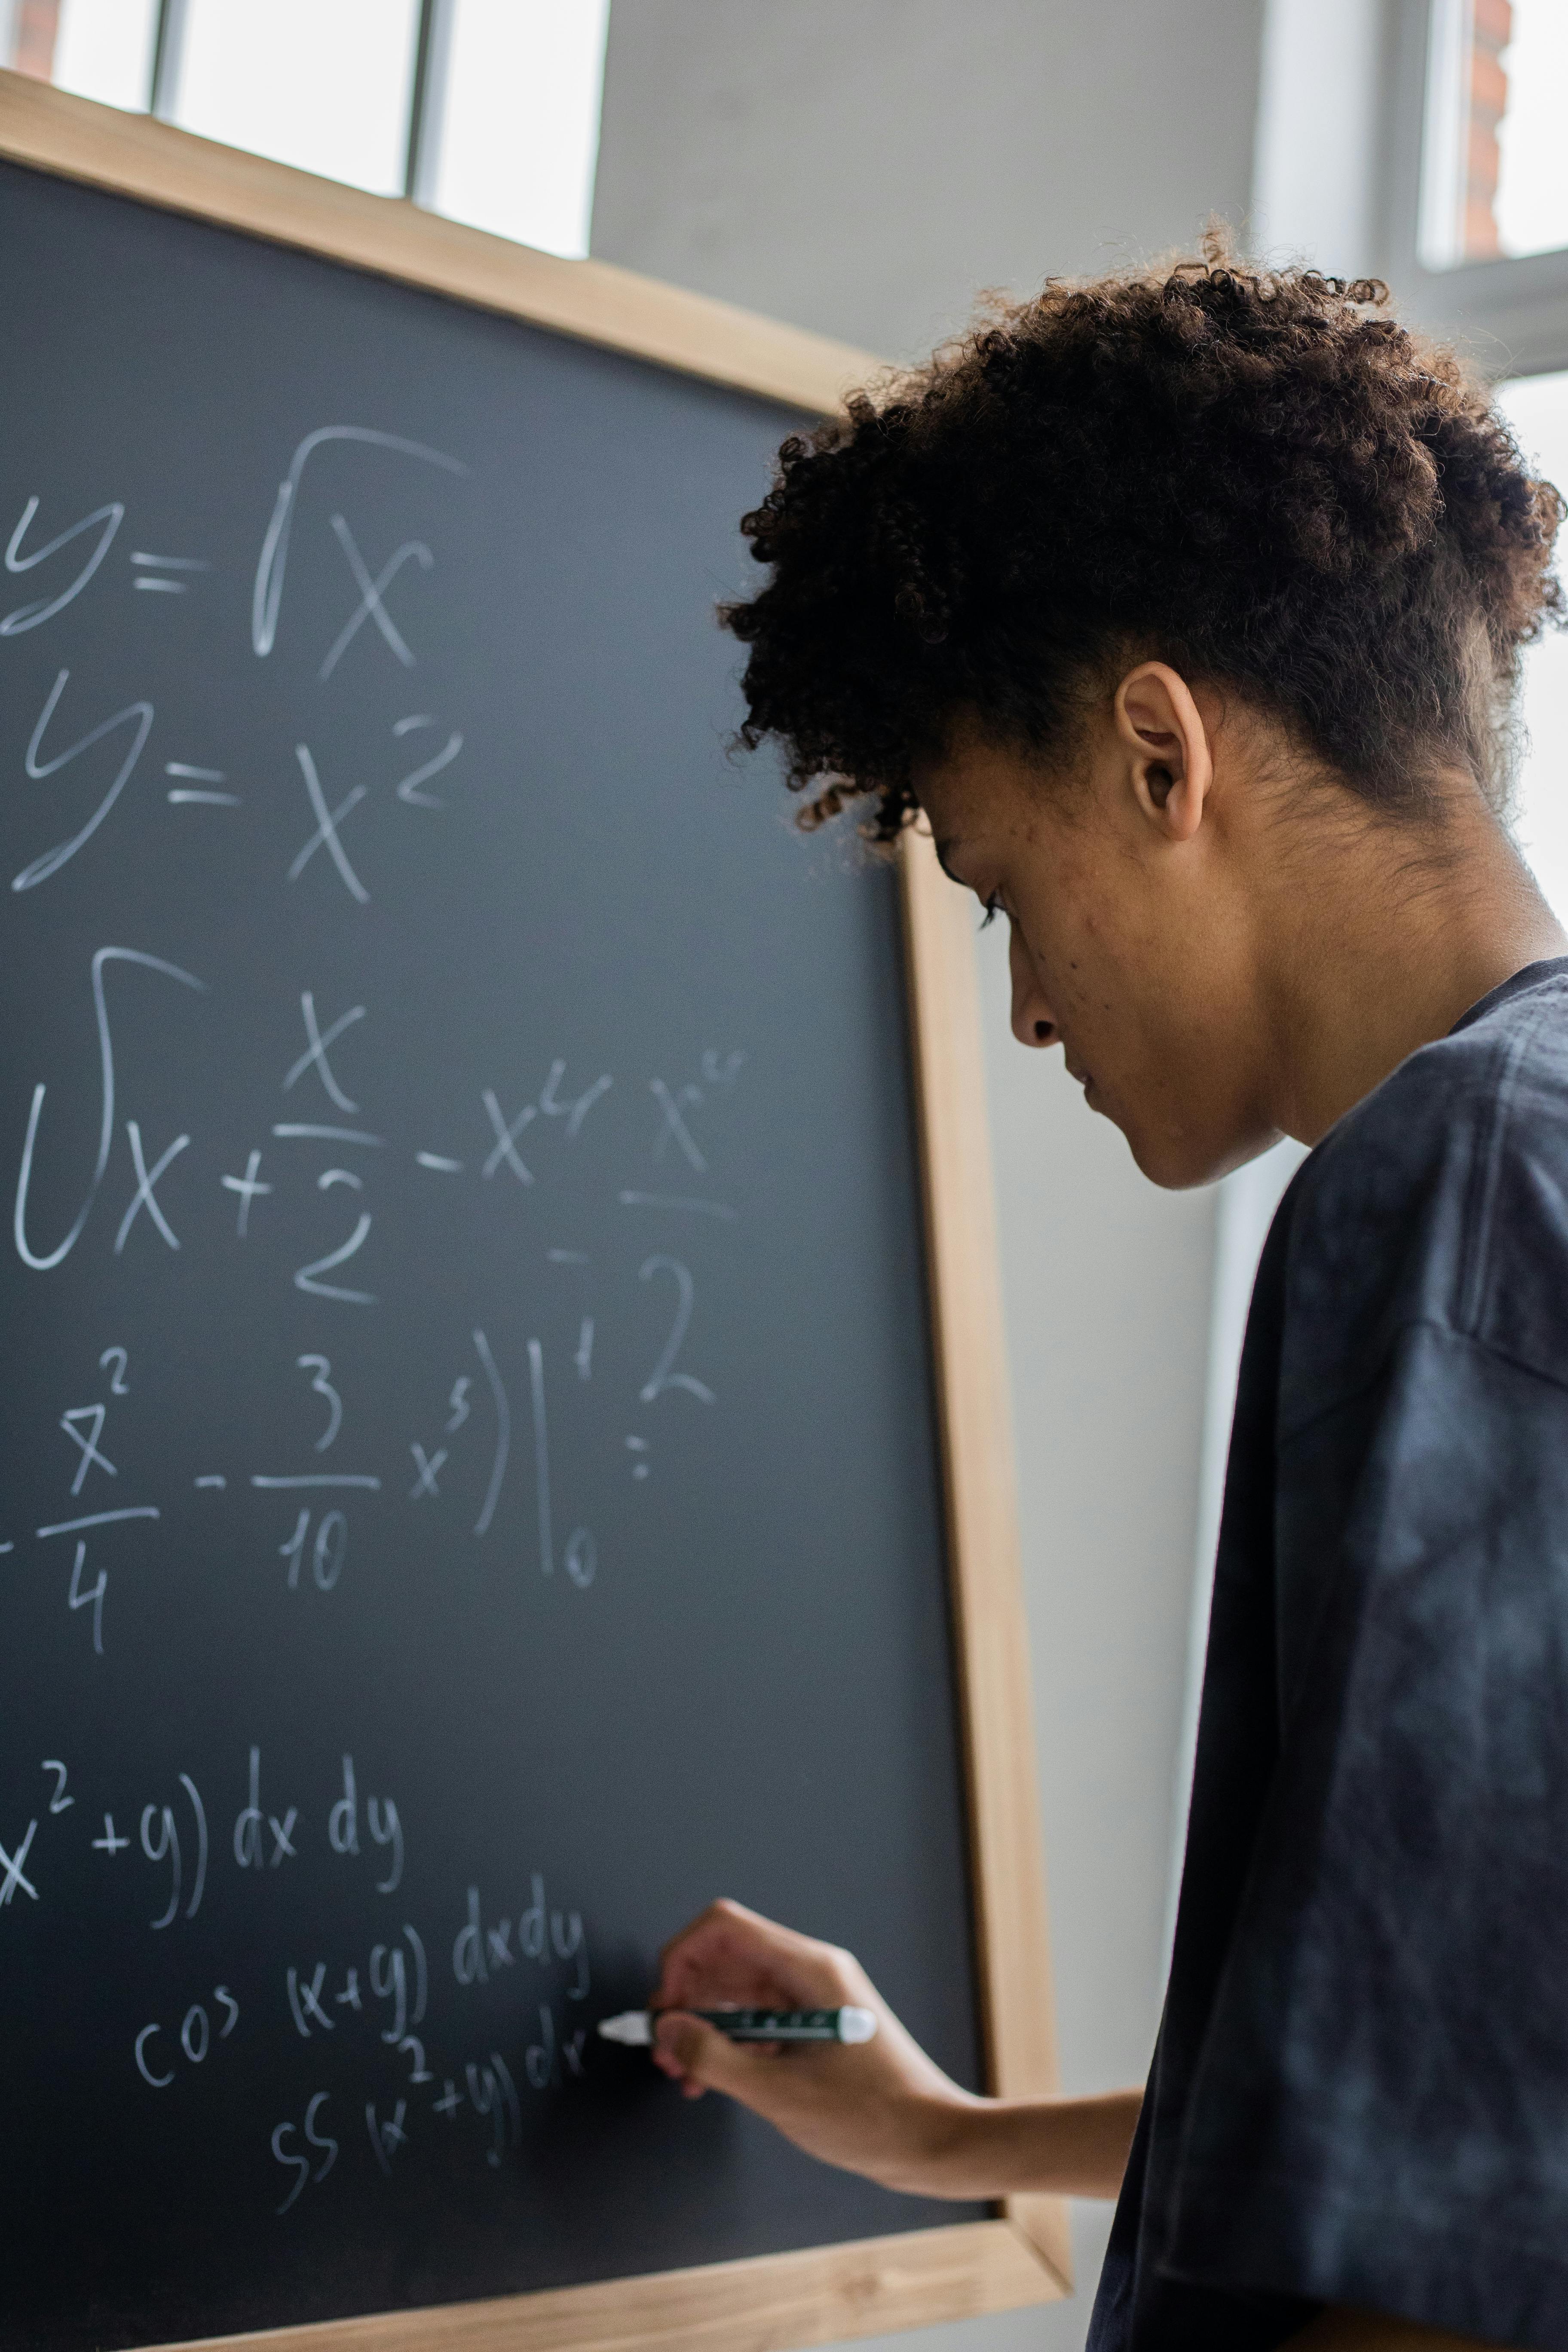 Solucionario de problemas de matemáticas: resuelve tus dudas y mejora tus habilidades matemáticas